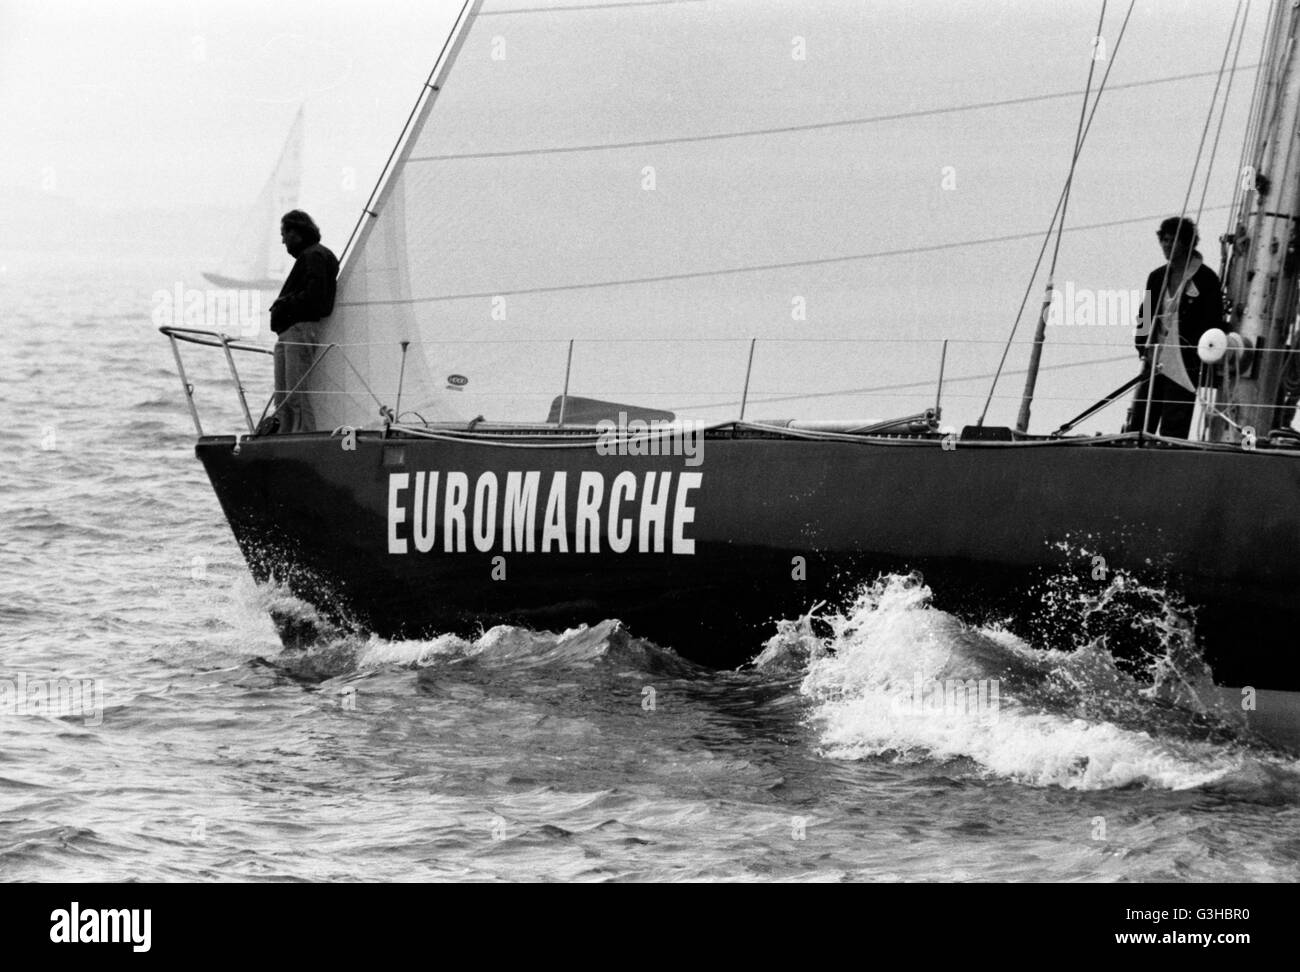 AJAXNETPHOTO. 29. AUGUST 1981. PORTSMOUTH, ENGLAND. -WHITBREAD RENNSTART - ANDRÉ MAURIC KONSTRUIERT EUROMARCHE FRANKREICHS MIT SKIPPER VON ERIC TABARLY. FOTO: JONATHAN EASTLAND/AJAX REF: 81002 Stockfoto